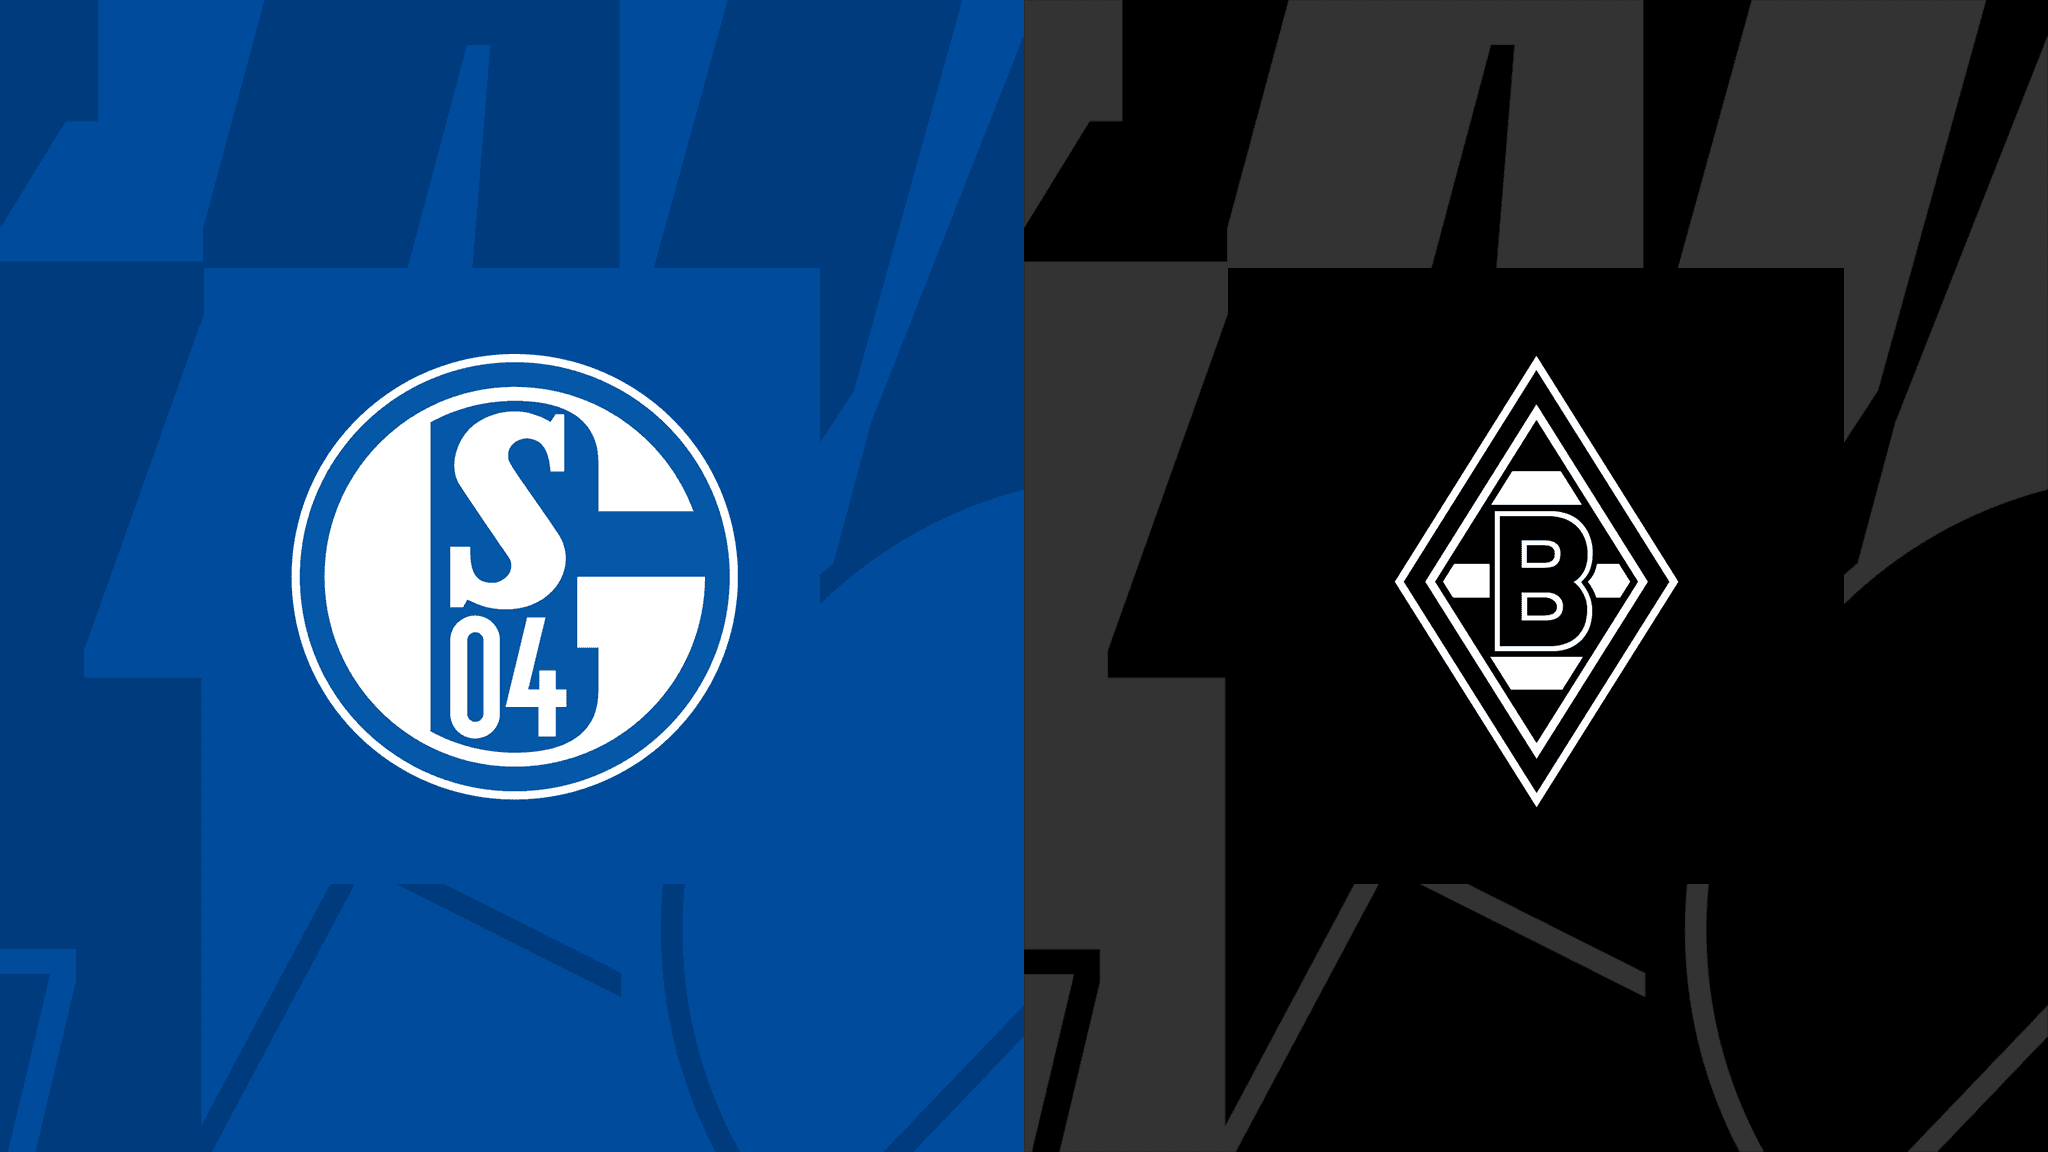  مشاهدة مباراة بوروسيا مونشنغلادباخ و شالكه 04 بث مباشر 13/08/2022 Schalke 04 vs Borussia M’gladbach